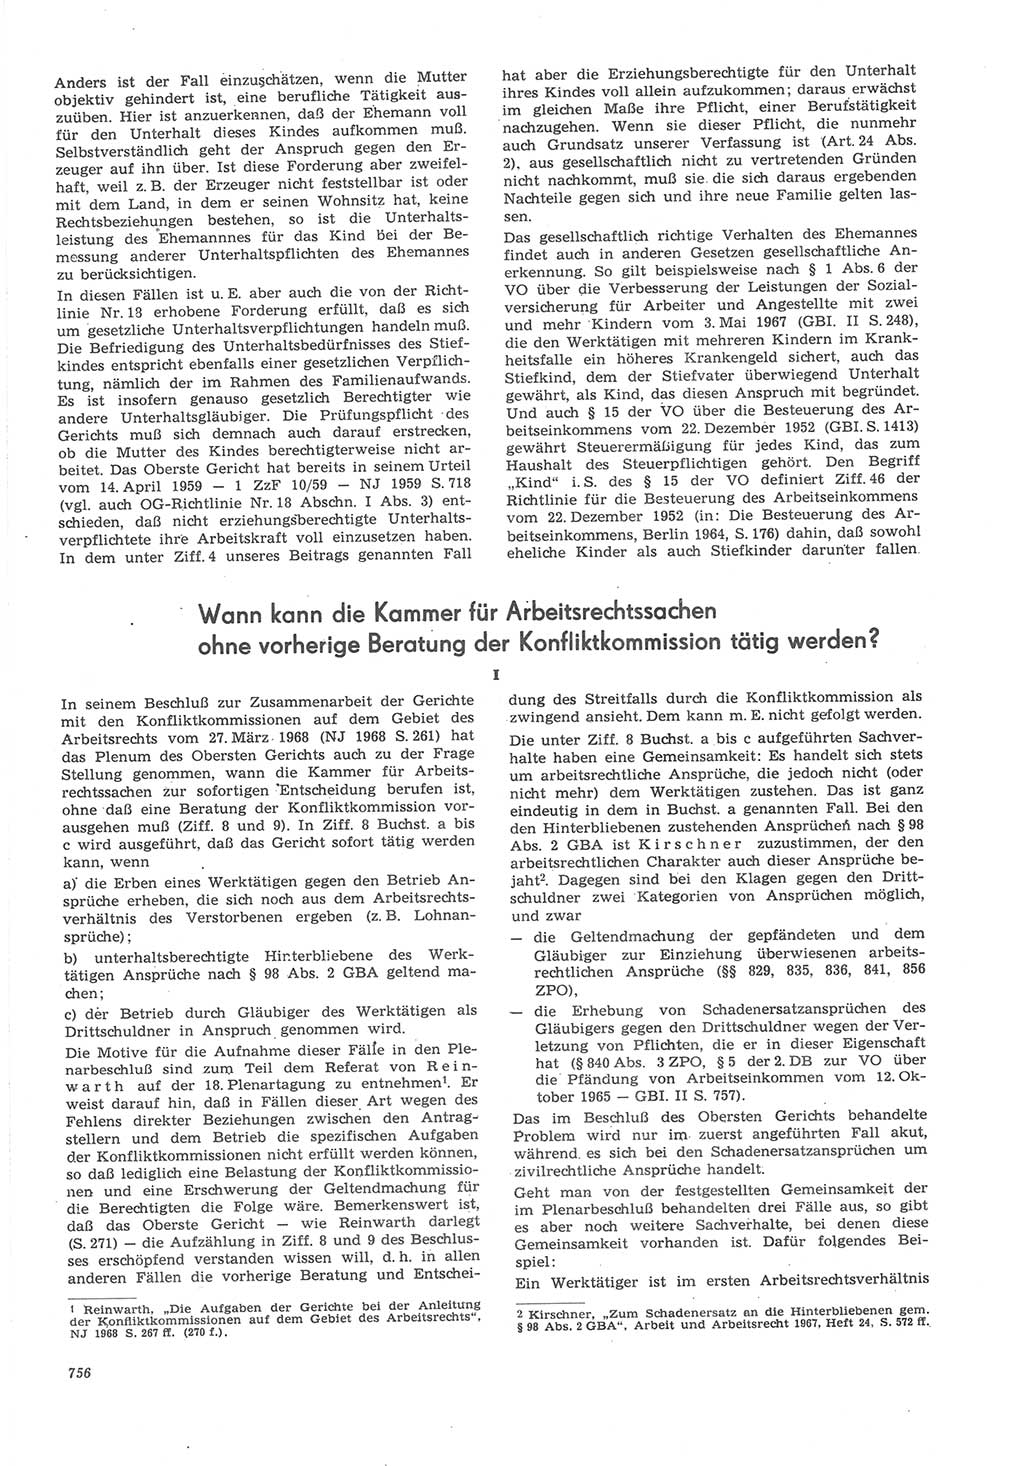 Neue Justiz (NJ), Zeitschrift für Recht und Rechtswissenschaft [Deutsche Demokratische Republik (DDR)], 22. Jahrgang 1968, Seite 756 (NJ DDR 1968, S. 756)